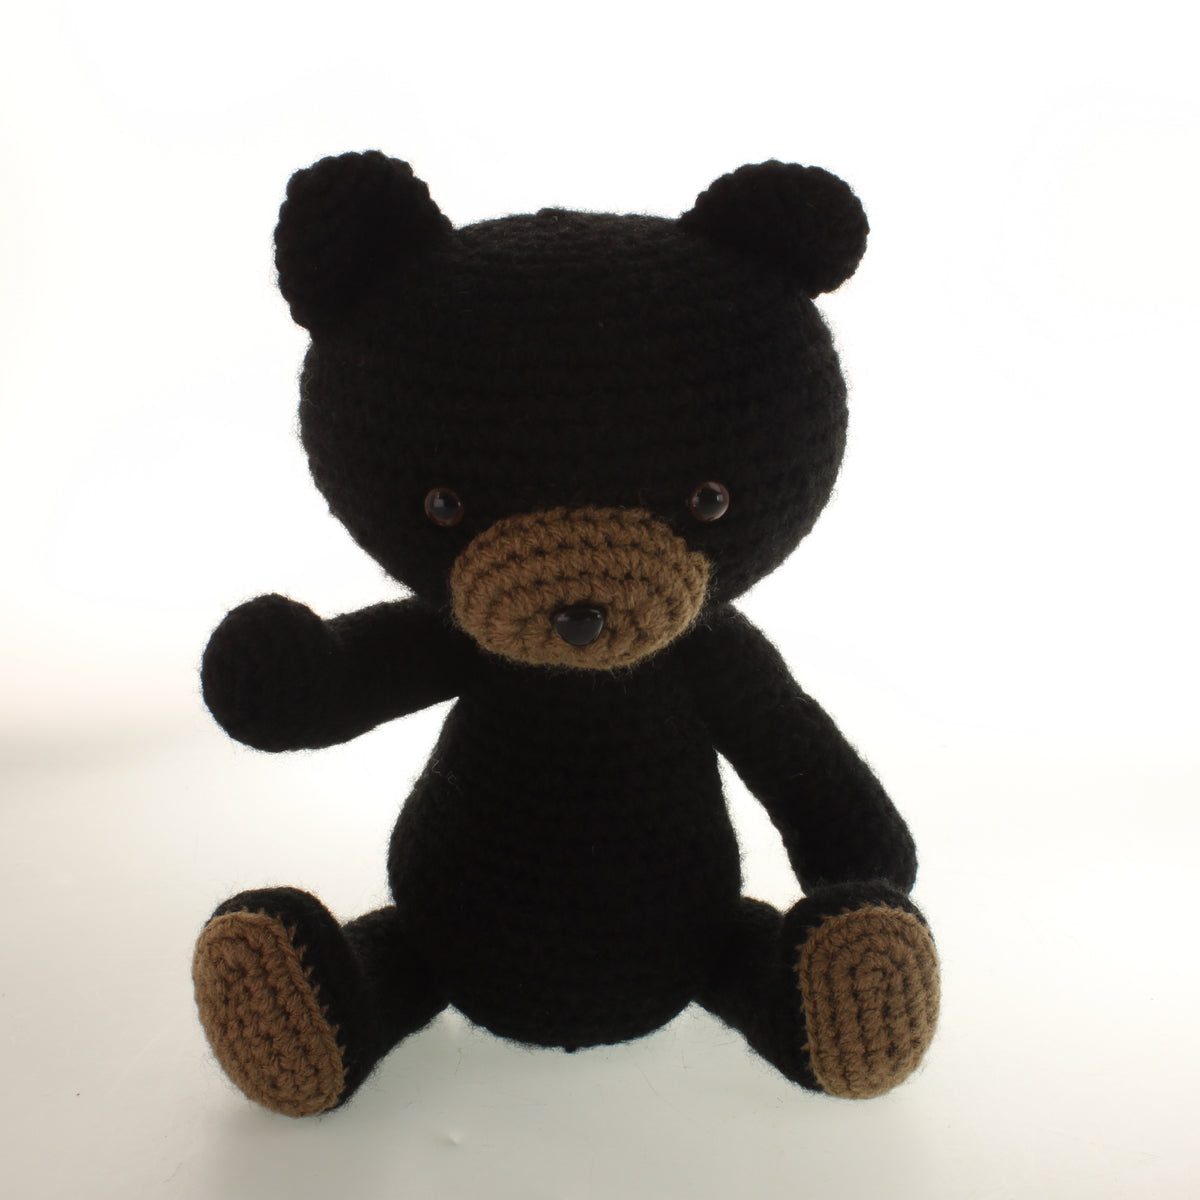 Freeman - Crochet bear – Terra Studios